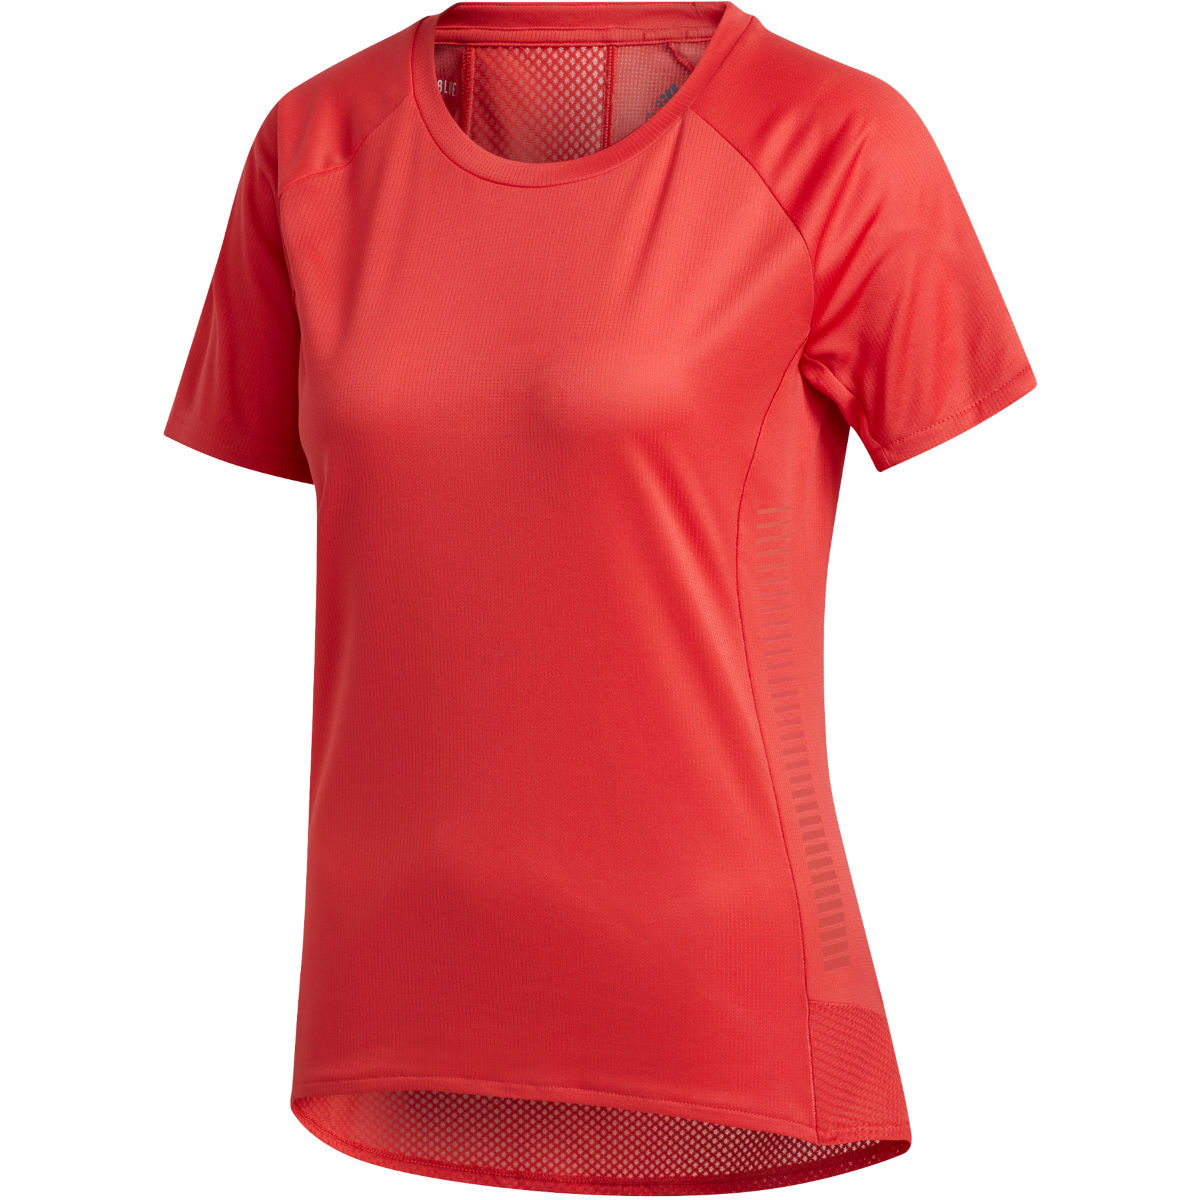 Camiseta adidas Rise Up N Run Parley para mujer - Camisetas de manga corta para running